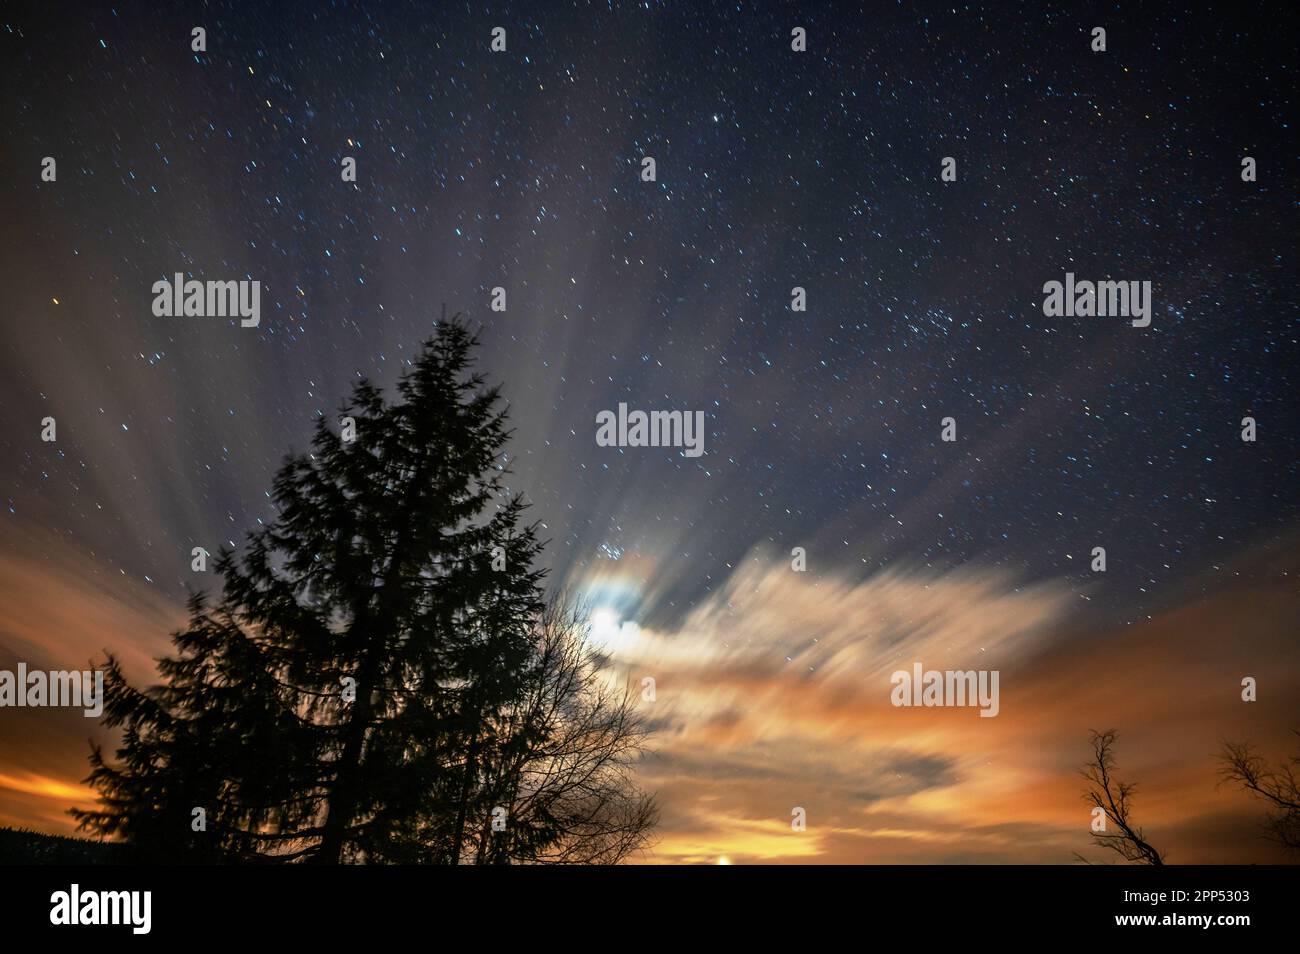 Rayons de lumière et de lueur sur le ciel nocturne, mille étoiles et silhouette d'arbre, vue fascinante. Jizerka, République tchèque. Banque D'Images